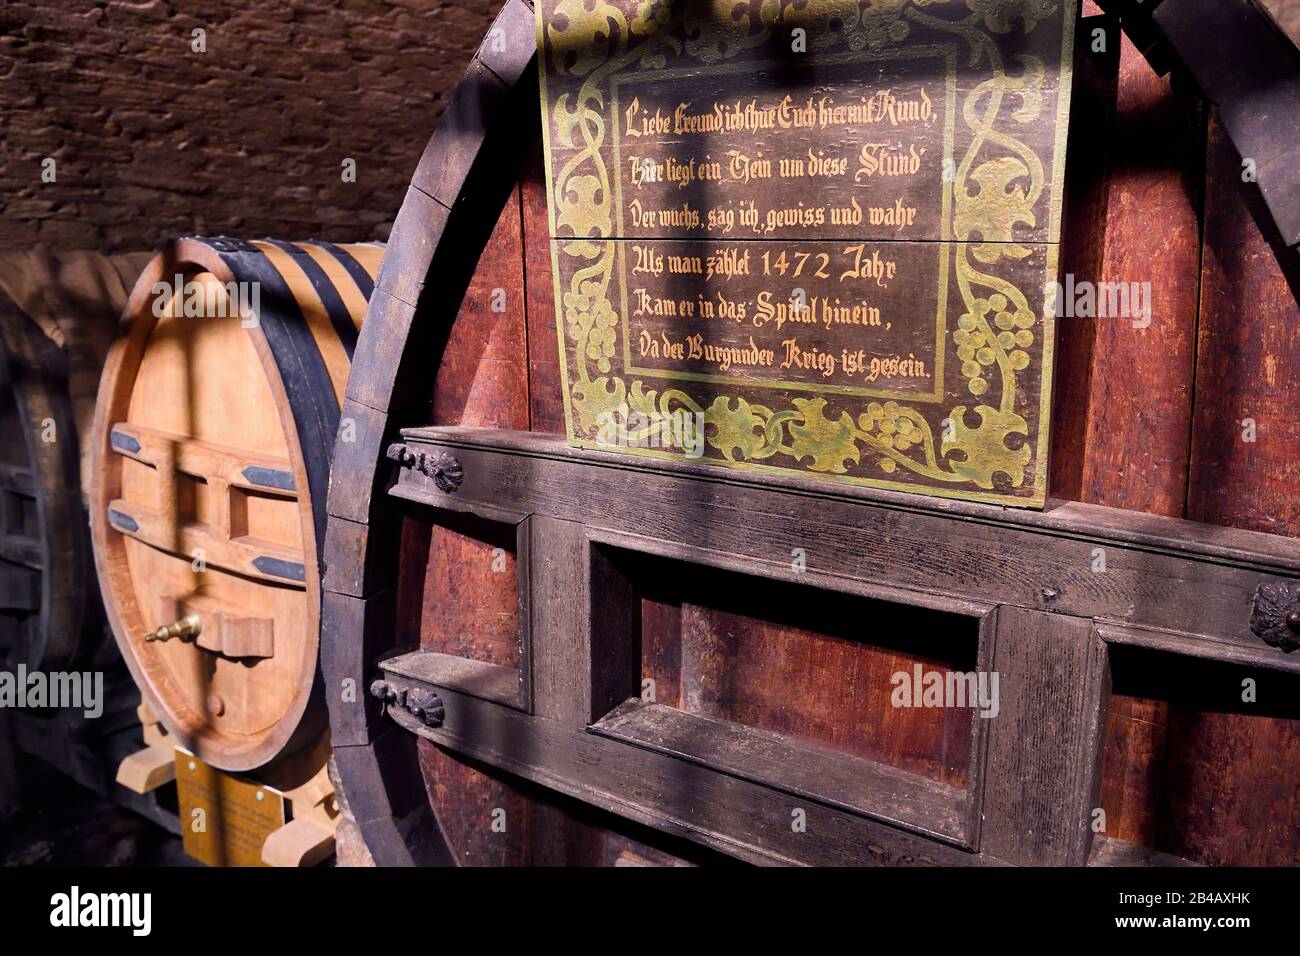 La France, le Bas Rhin, Strasbourg, vieille ville classée au patrimoine mondial par l'UNESCO, l'Hôpital civil, la cave historique des Hospices de Strasbourg, le baril de vin de 1472, le plus ancien vin blanc du monde encore conservé dans le baril a été transféré dans le canon sur la gauche Banque D'Images